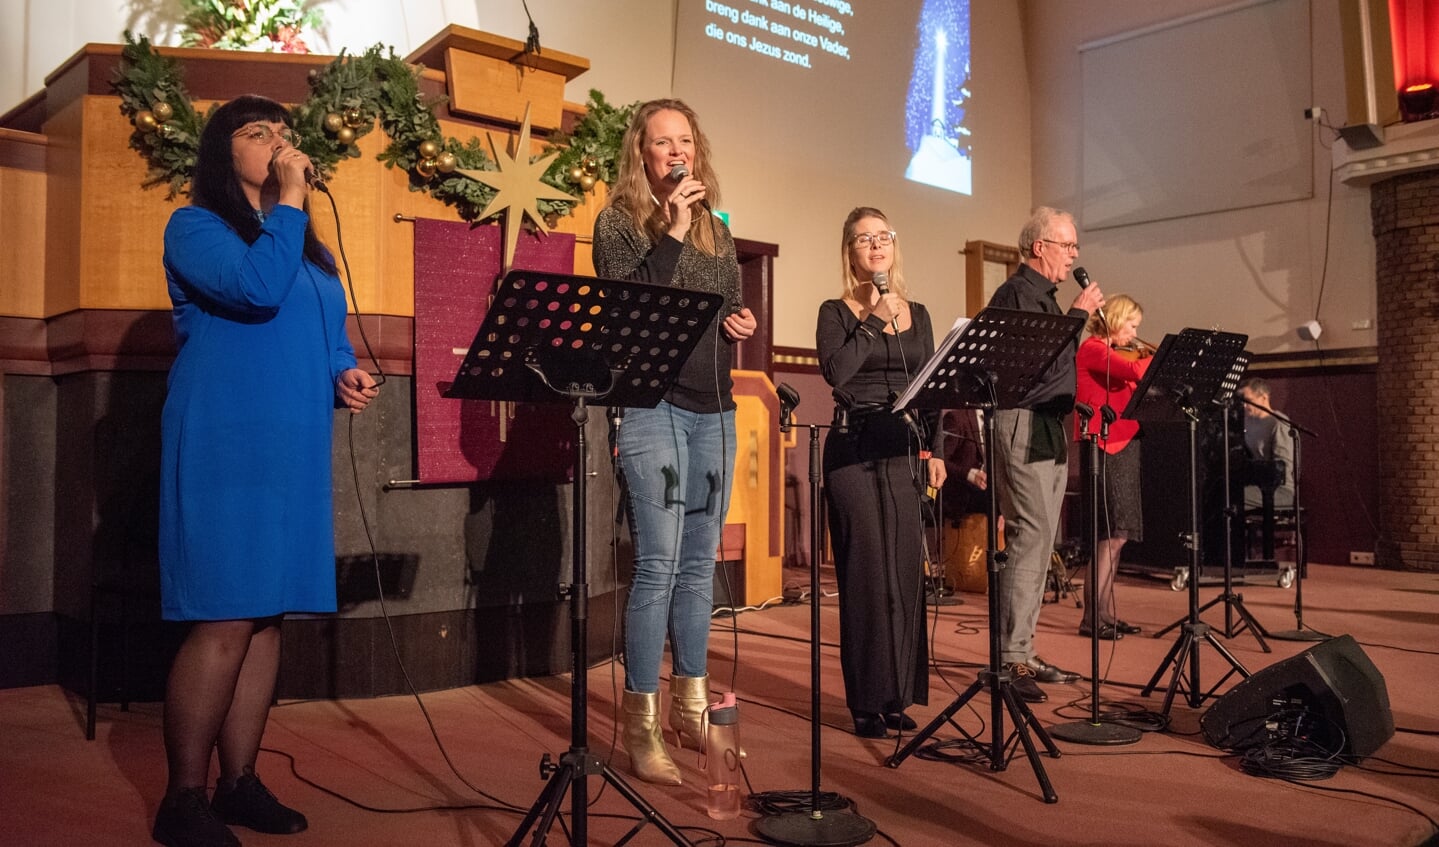 De Oekraïense Lena zong samen met het combo ‘Breng dank aan de Eeuwige’, in het Oekraïens en het Nederlands tijdens Voorthuizen Zingt.